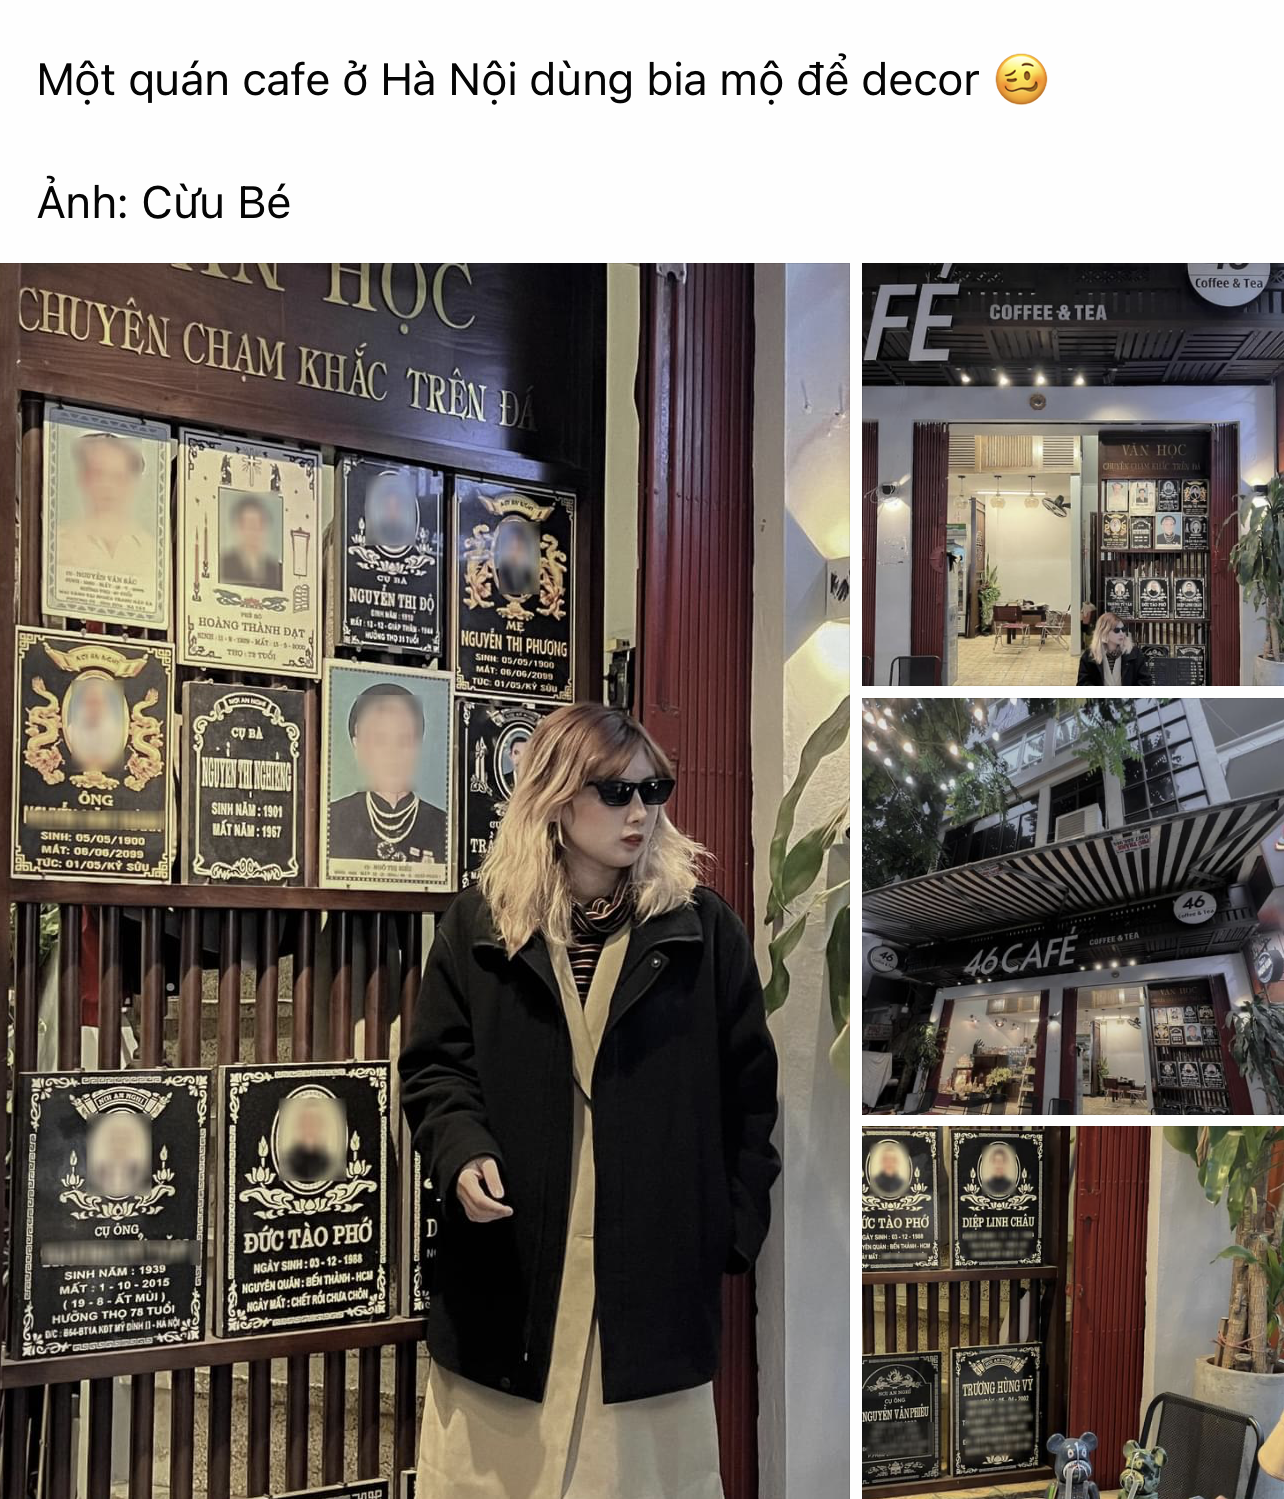 Sự thật về quán cà phê ở Hà Nội dùng bia mộ làm decor